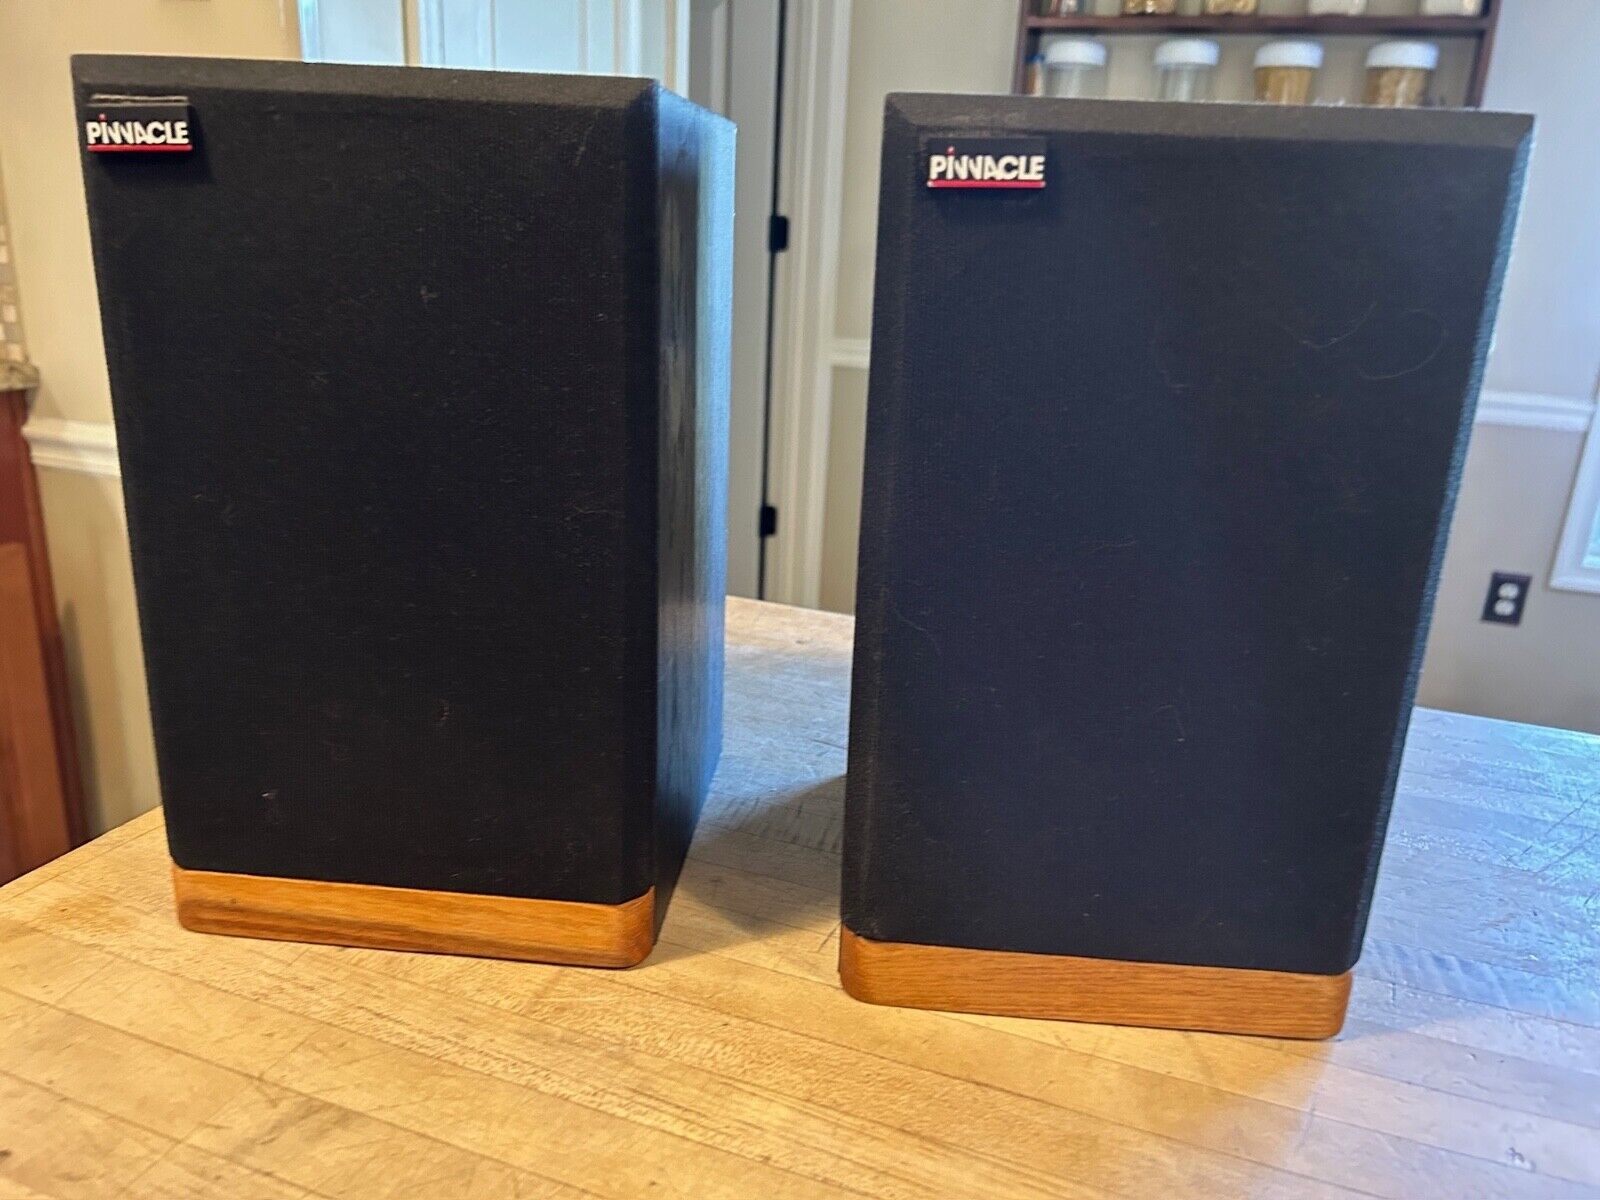 Set of 2 Pinnacle PN5+ Miniature Bookshelf Loud Speakers Working * Wood & Black